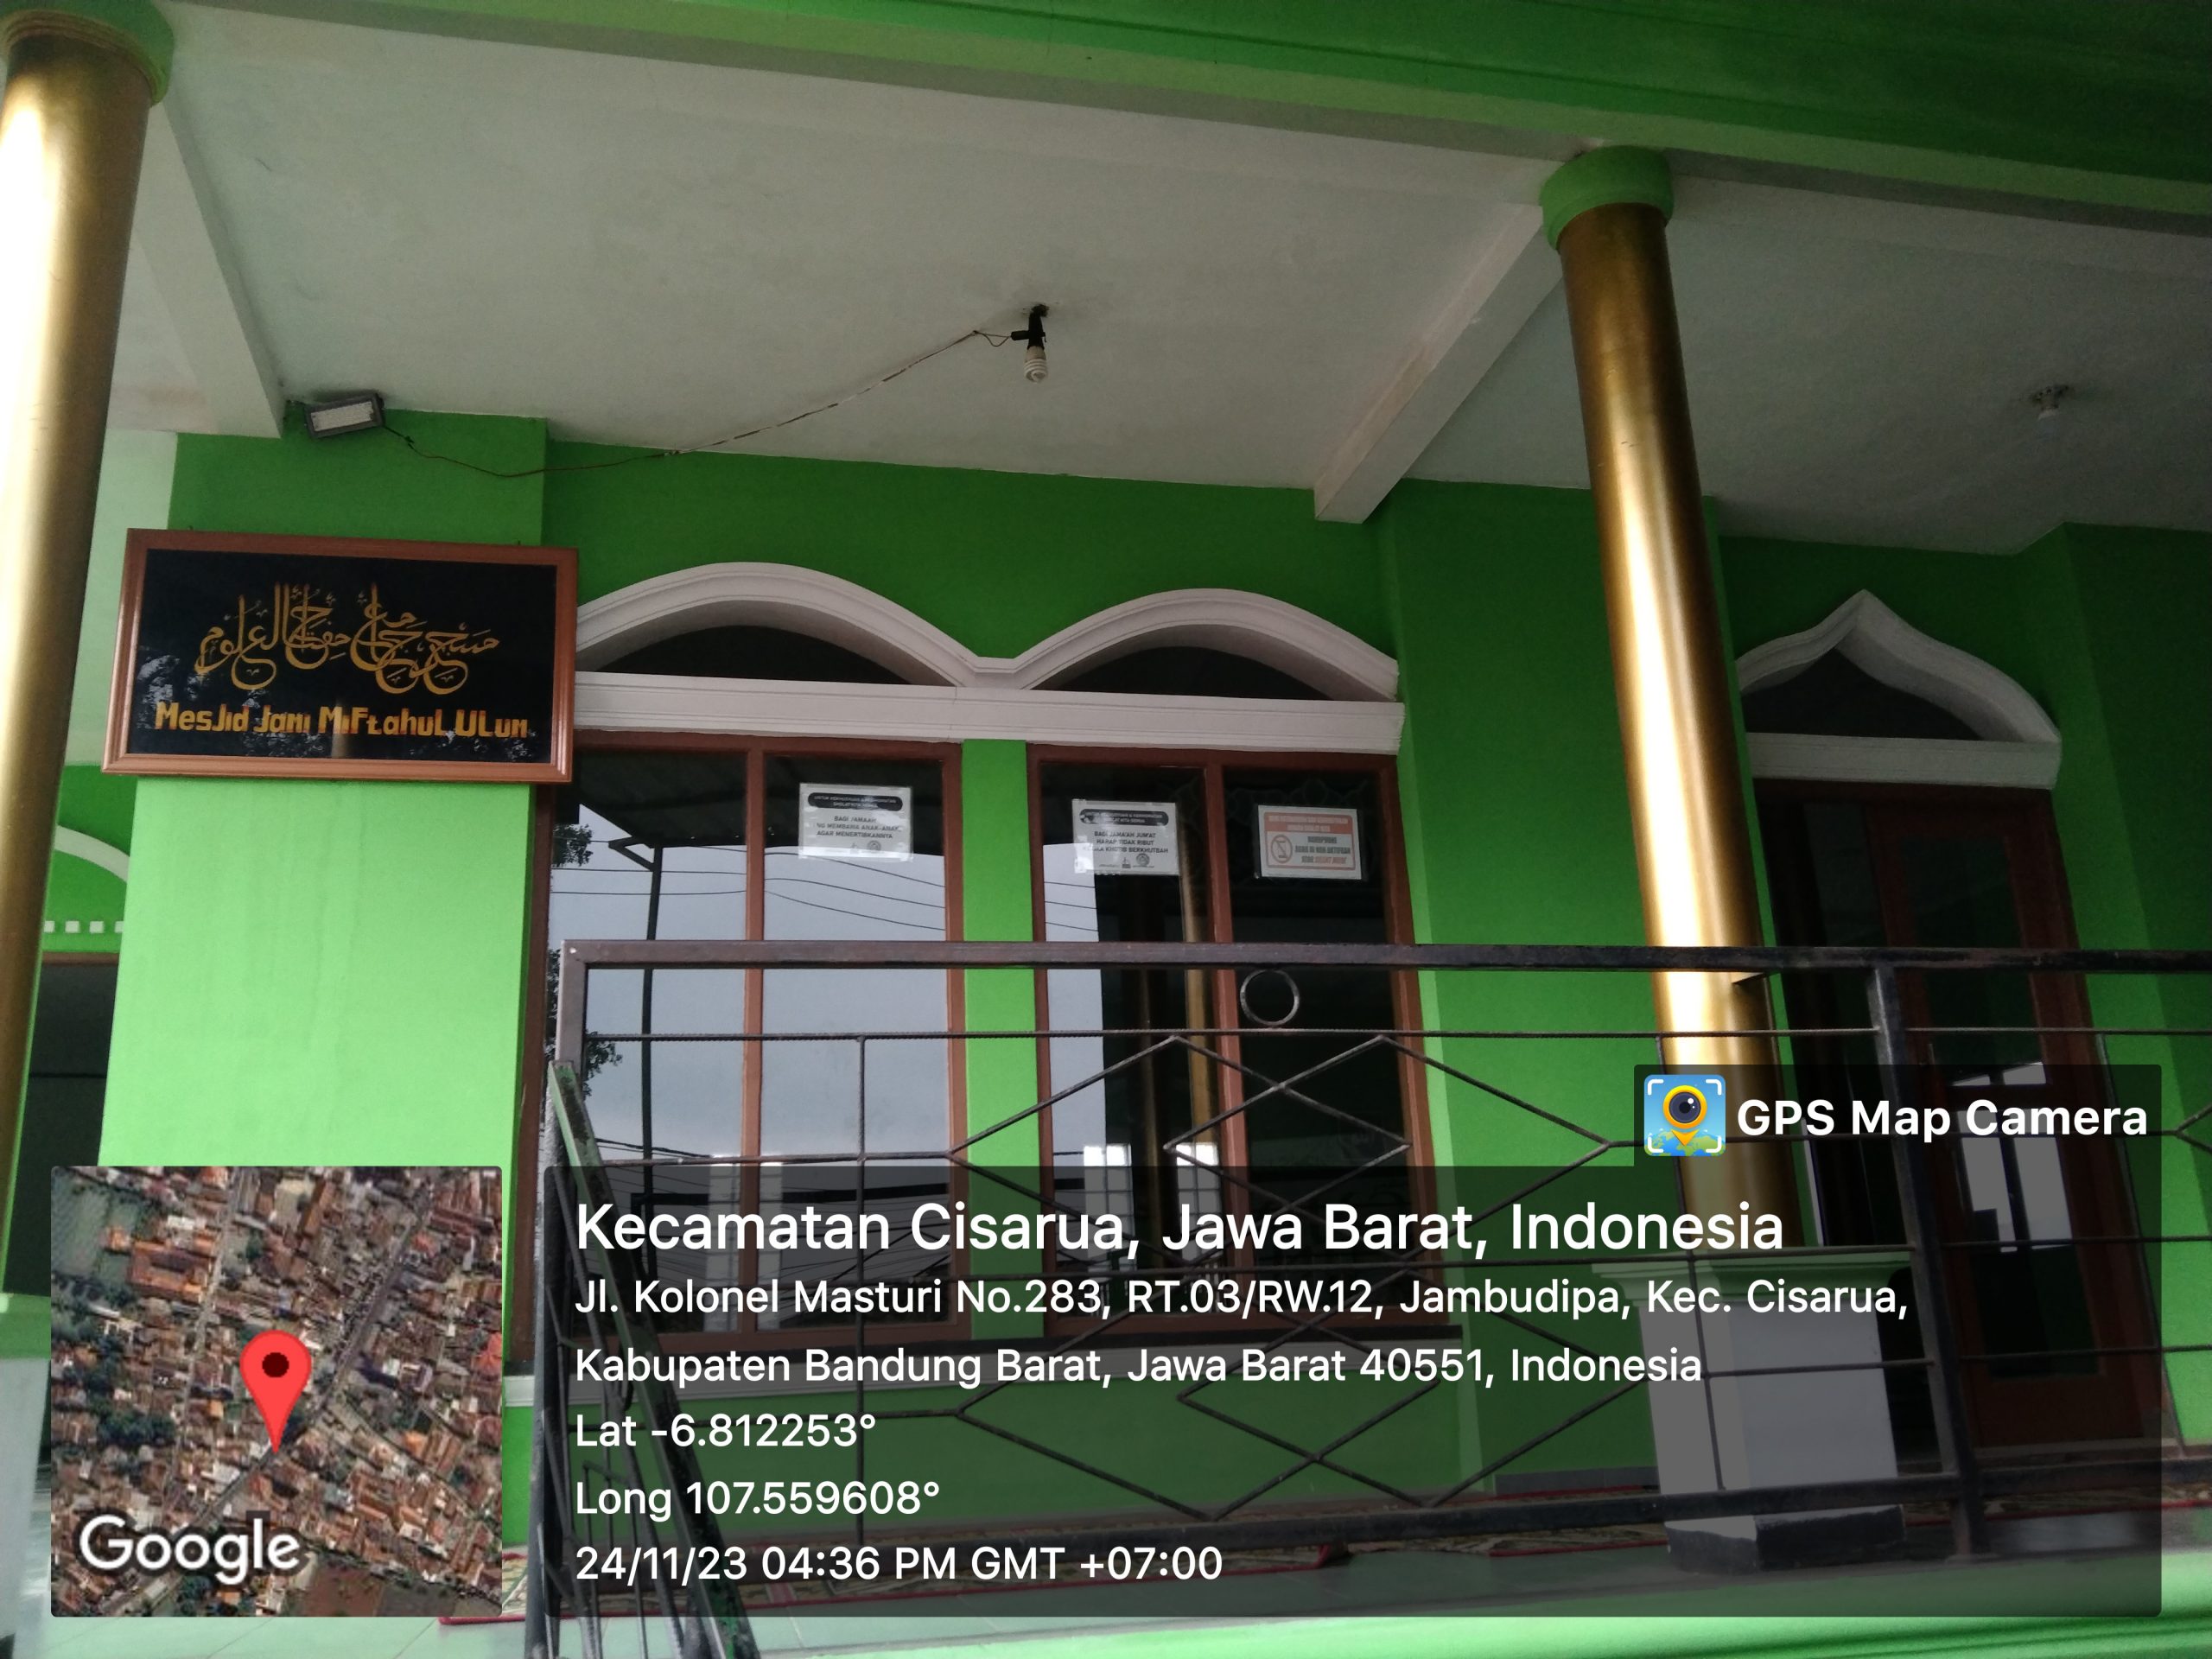 Usulan Lokasi Sedekah Air untuk Mesjid Jami Miftahul Ulum di Kampung Barukai, Jln Kolonel Masturi, Desa Jambudipa, Bandung Barat, Jawa Barat